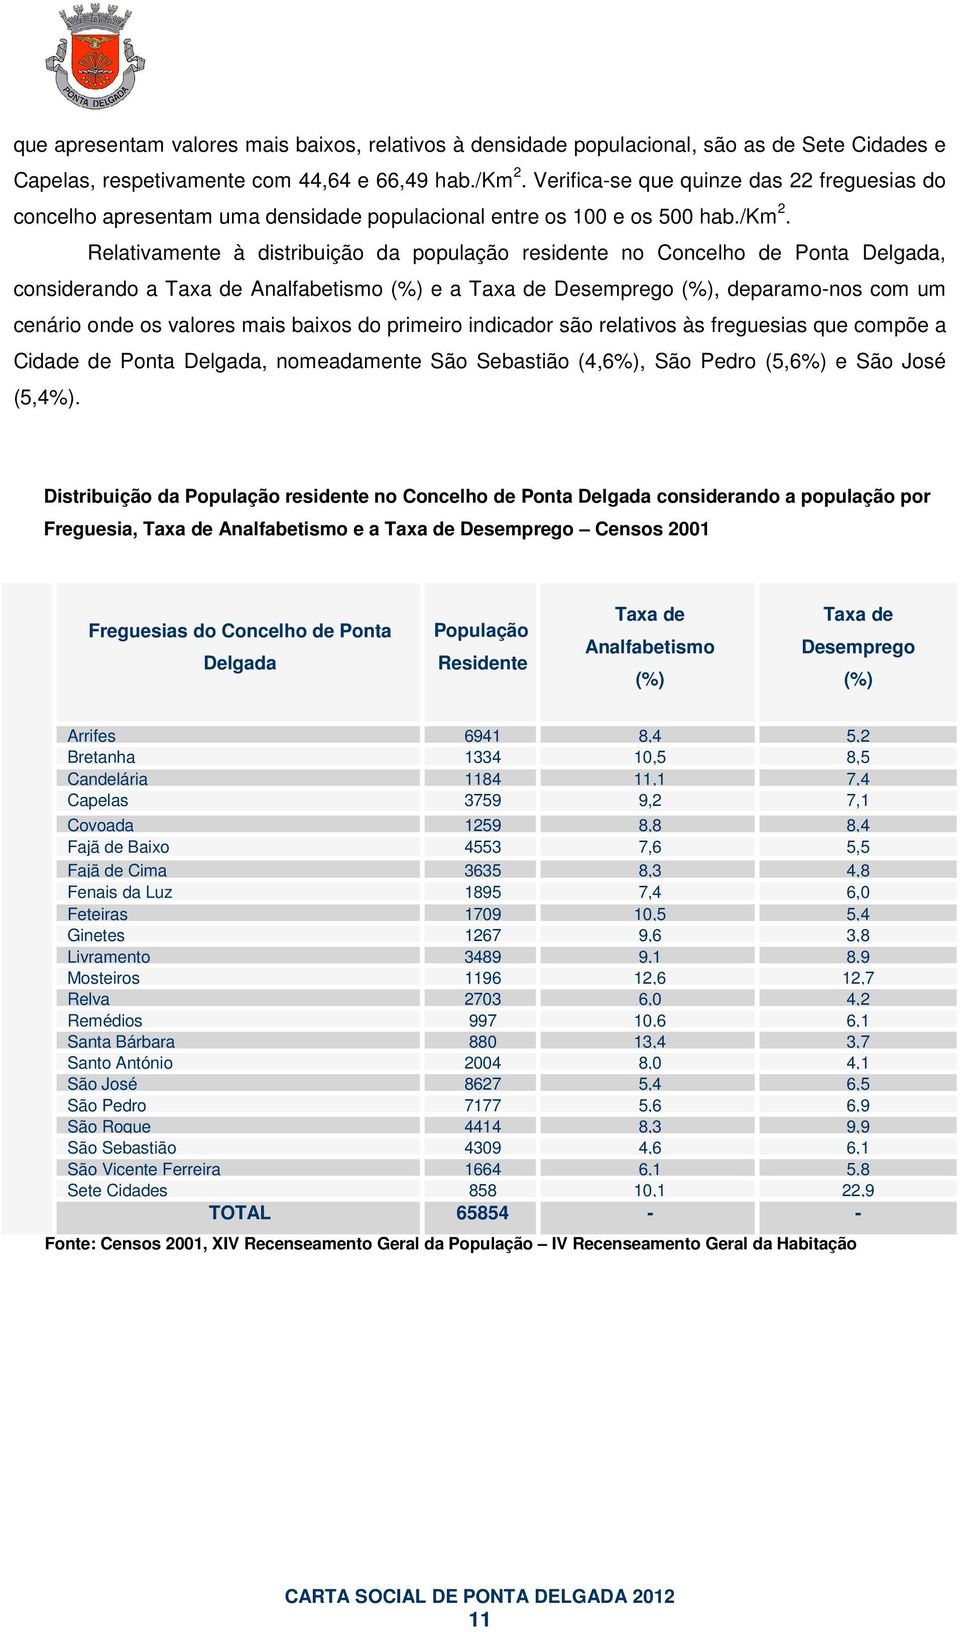 Relativamente à distribuição da população residente no Concelho de Ponta Delgada, considerando a Taxa de Analfabetismo (%) e a Taxa de Desemprego (%), deparamo-nos com um cenário onde os valores mais